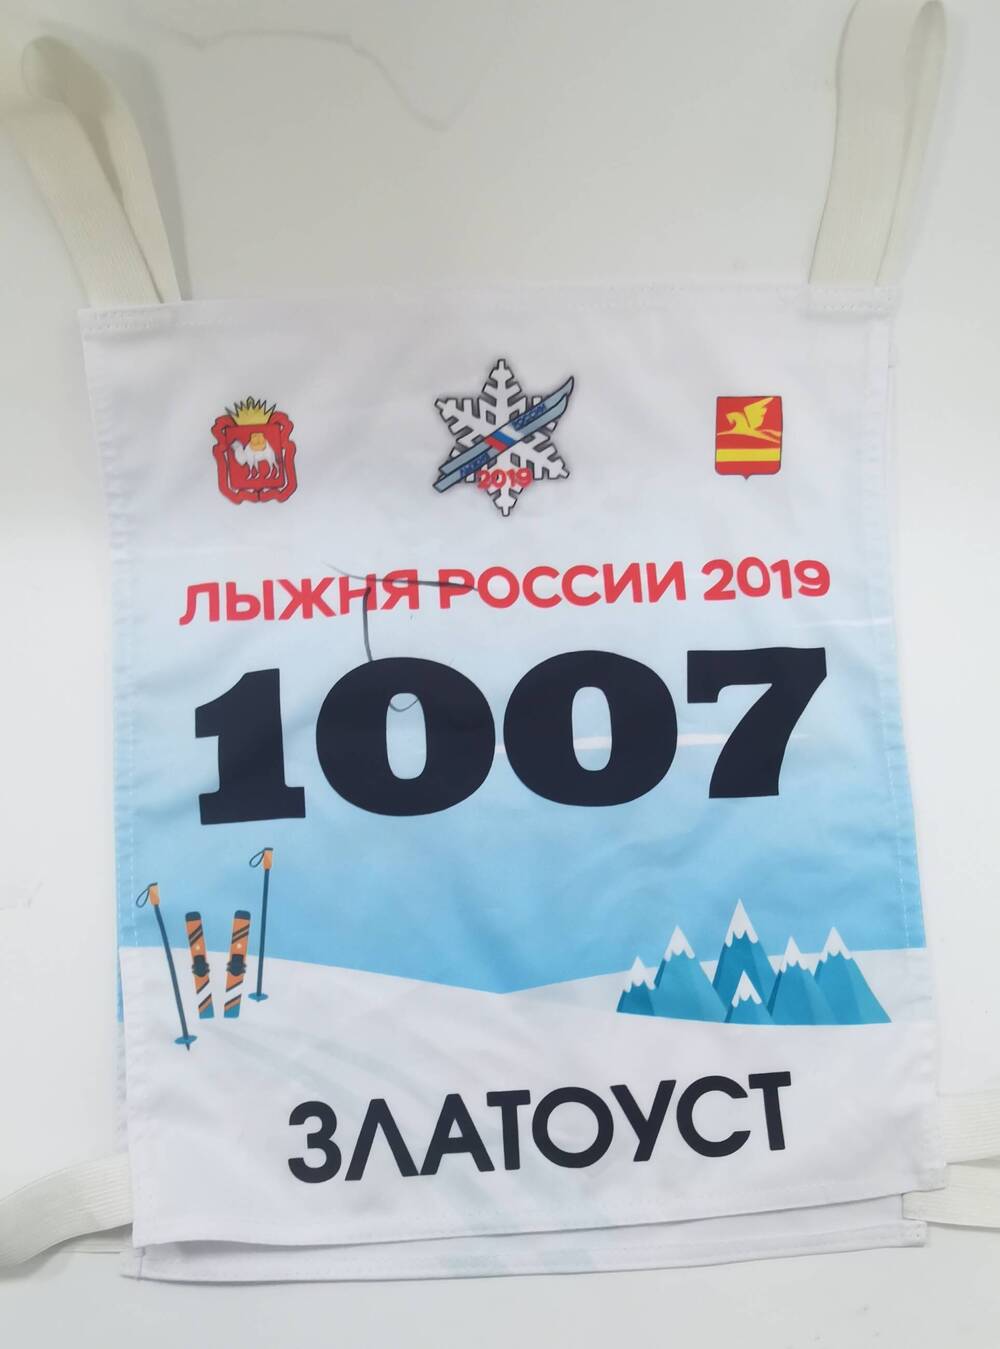 Номер нагрудный спортивный 1007 массовой лыжной гонки Лыжня России 2019. г. Златоуст, 2019 г.